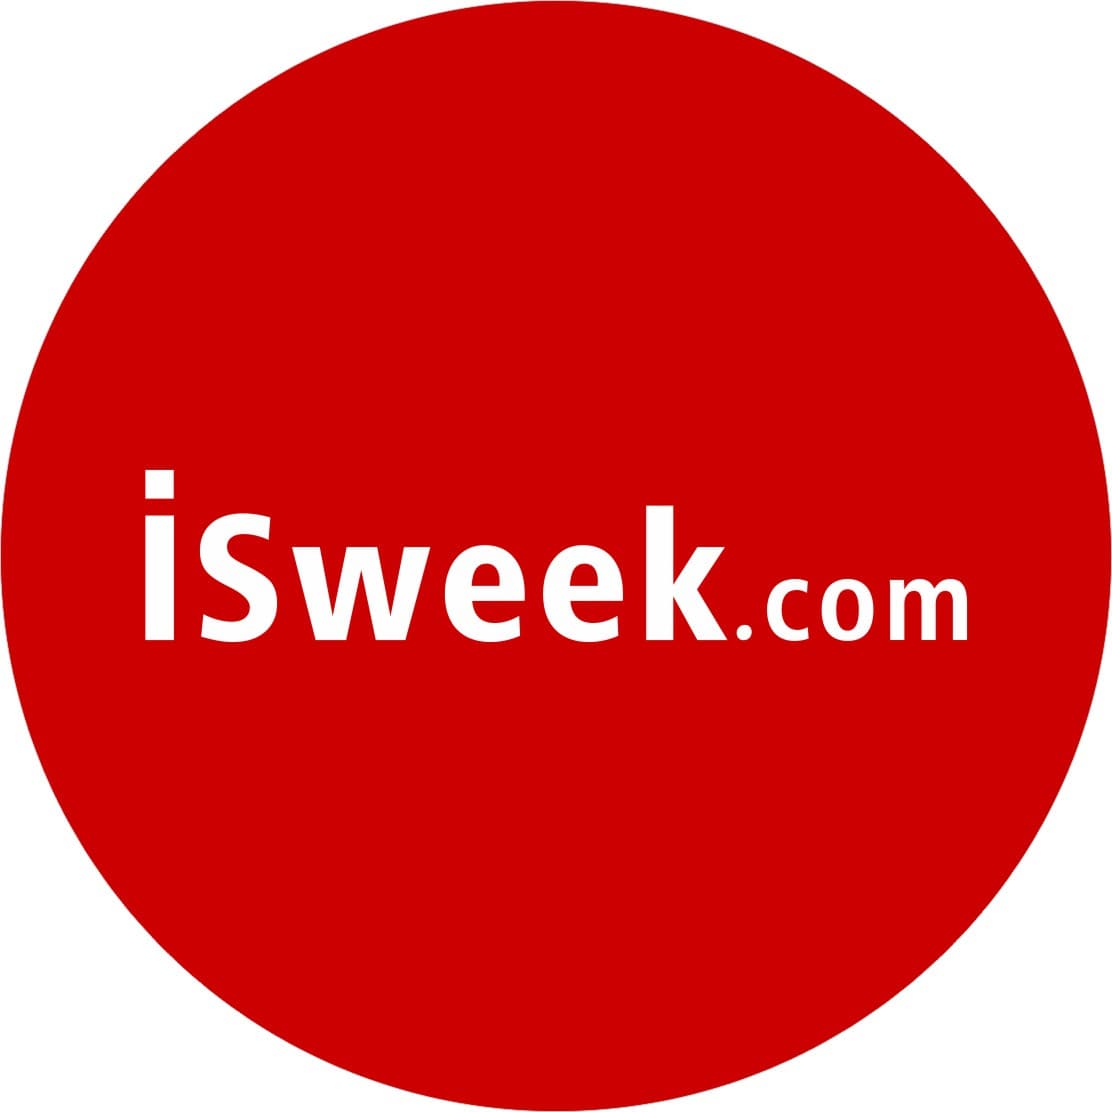 ISweekcom